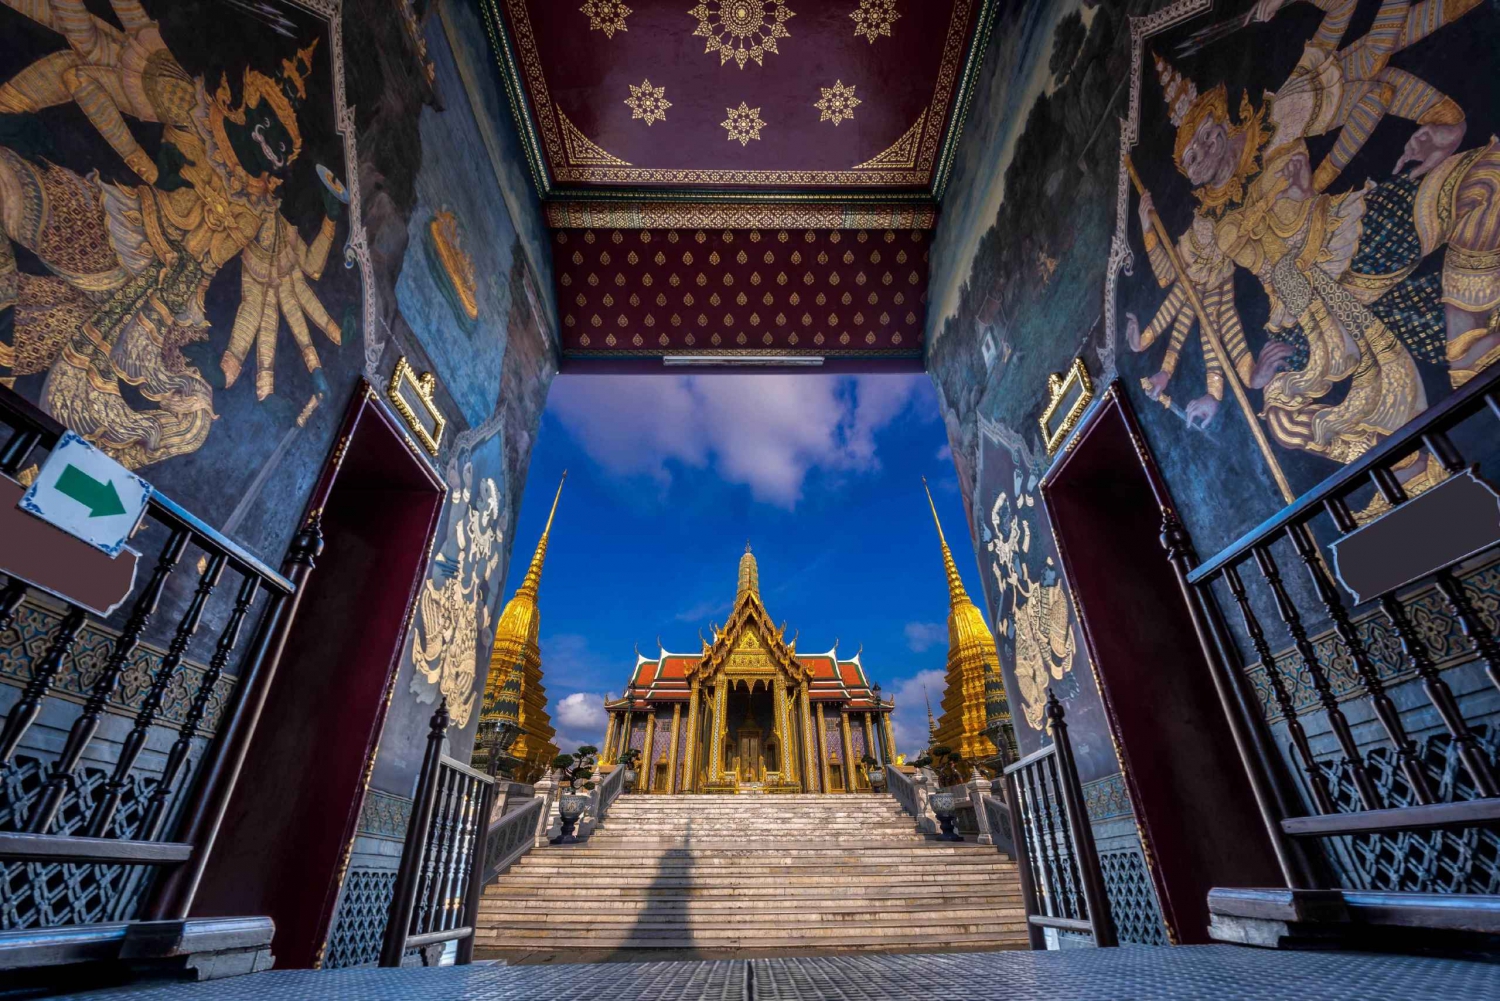 Bangkok: Grand Palace, Wat Arun and Wat Pho Evening Tour